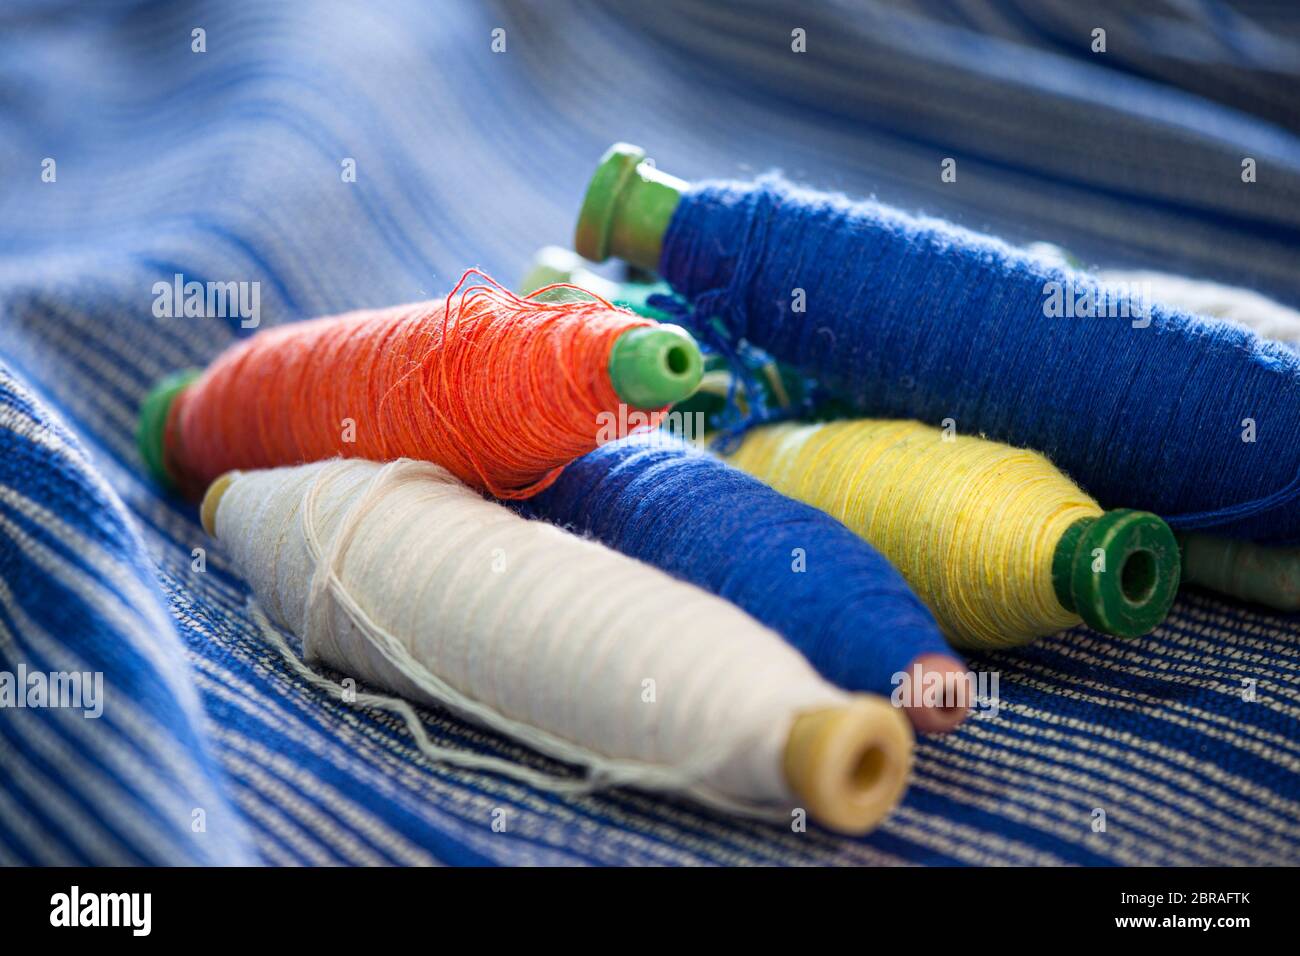 Spulen aus Baumwollfäden auf Textilmaterial, die in einer Kooperative in Oaxaca, Mexiko, auf einem Webstuhl webt wurden. Stockfoto